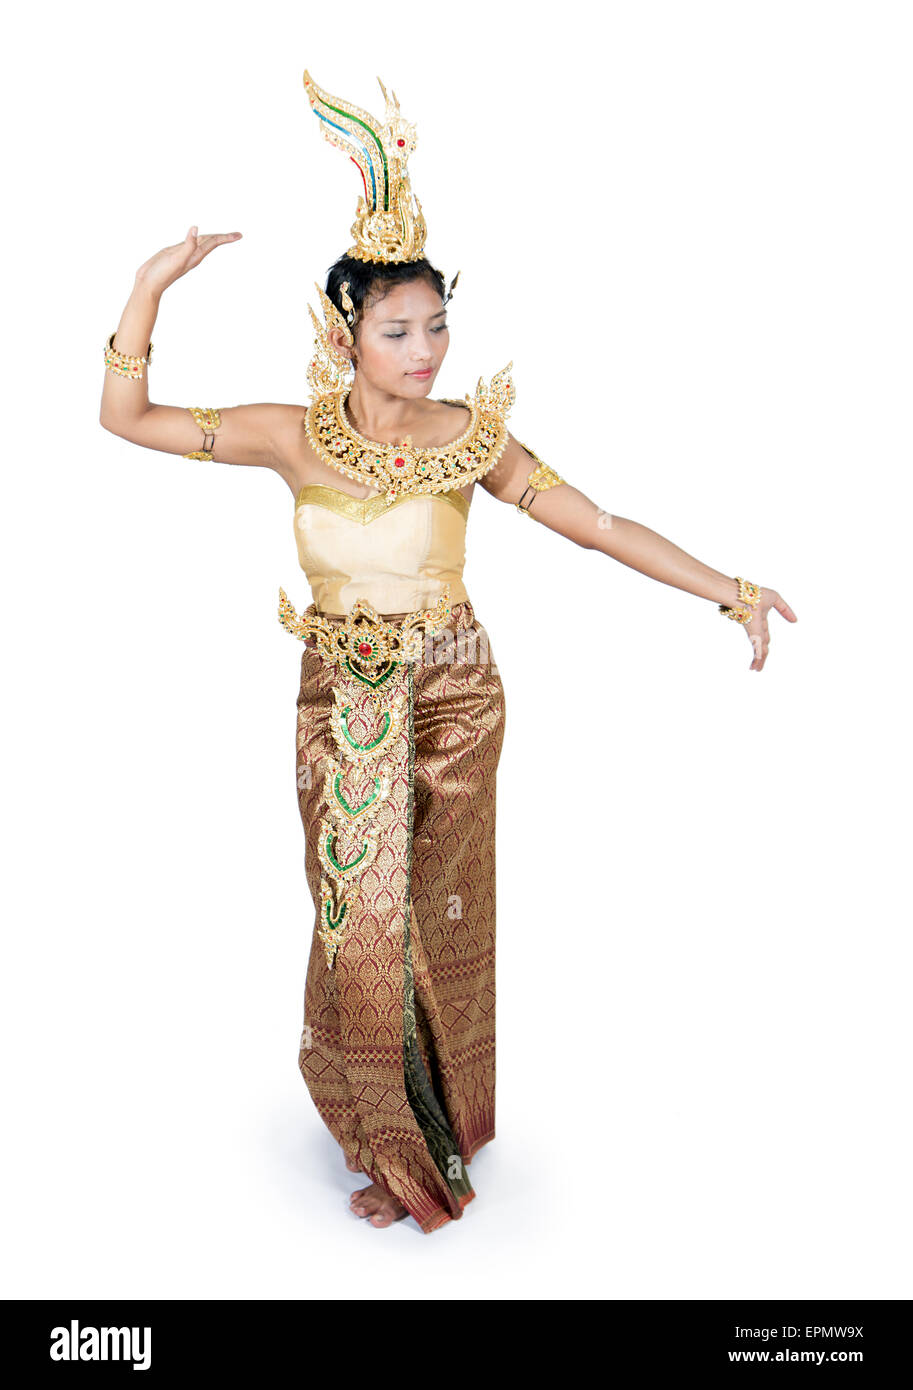 Femme thaïlandaise en costume traditionnel dansant sur fond blanc Banque D'Images